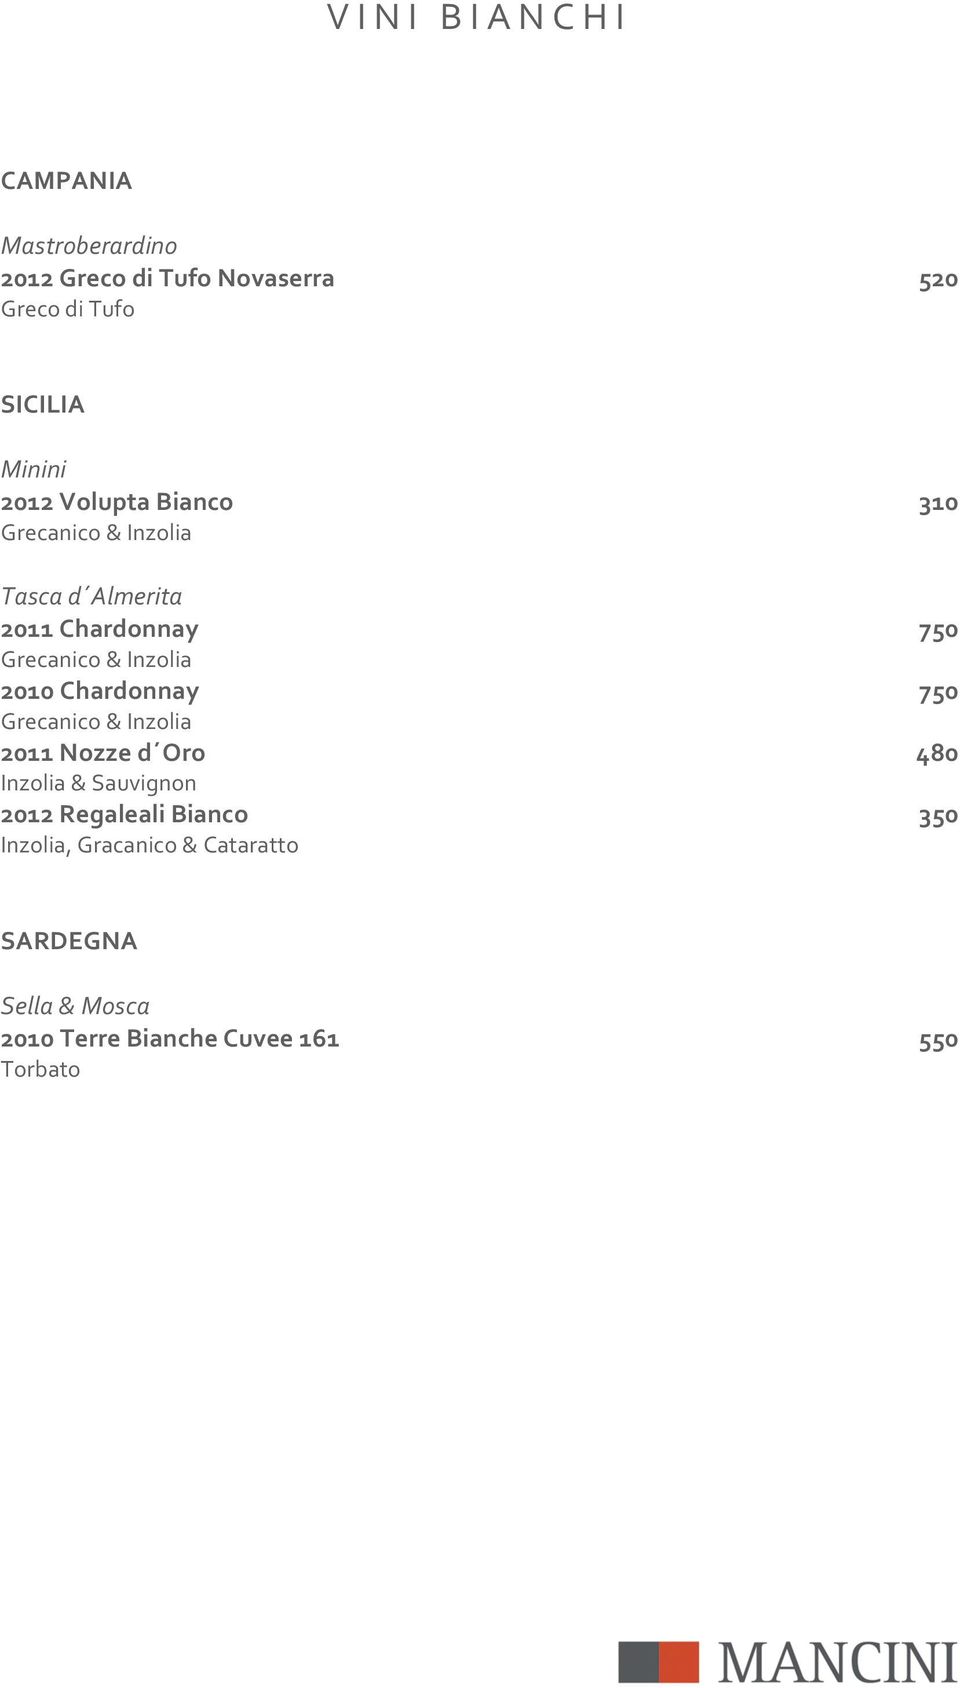 Grecanico&Inzolia 2010%Chardonnay% 750% Grecanico&Inzolia 2011%Nozze%d Oro% 480% Inzolia&Sauvignon